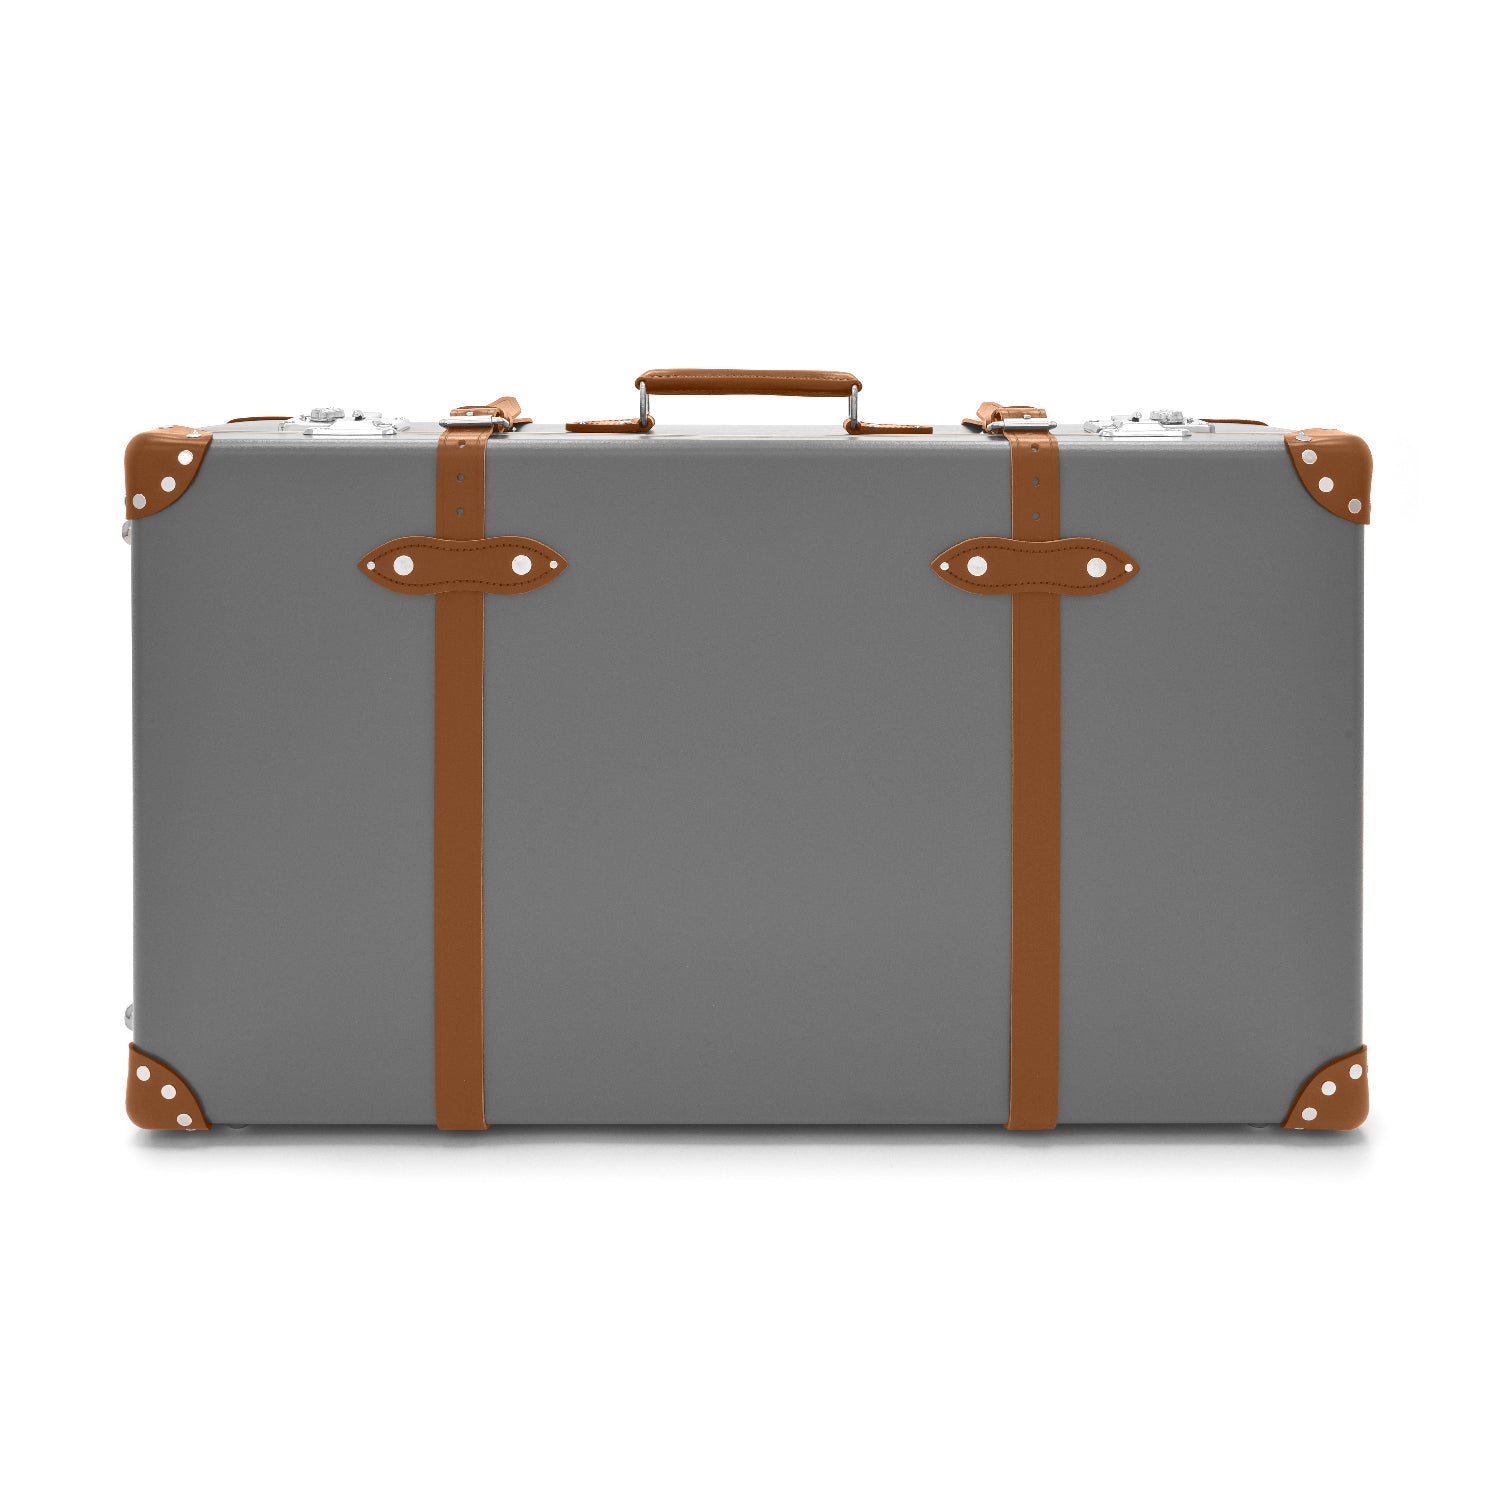 センテナリー ラージ スーツケース | グリーン | グローブ・トロッター 